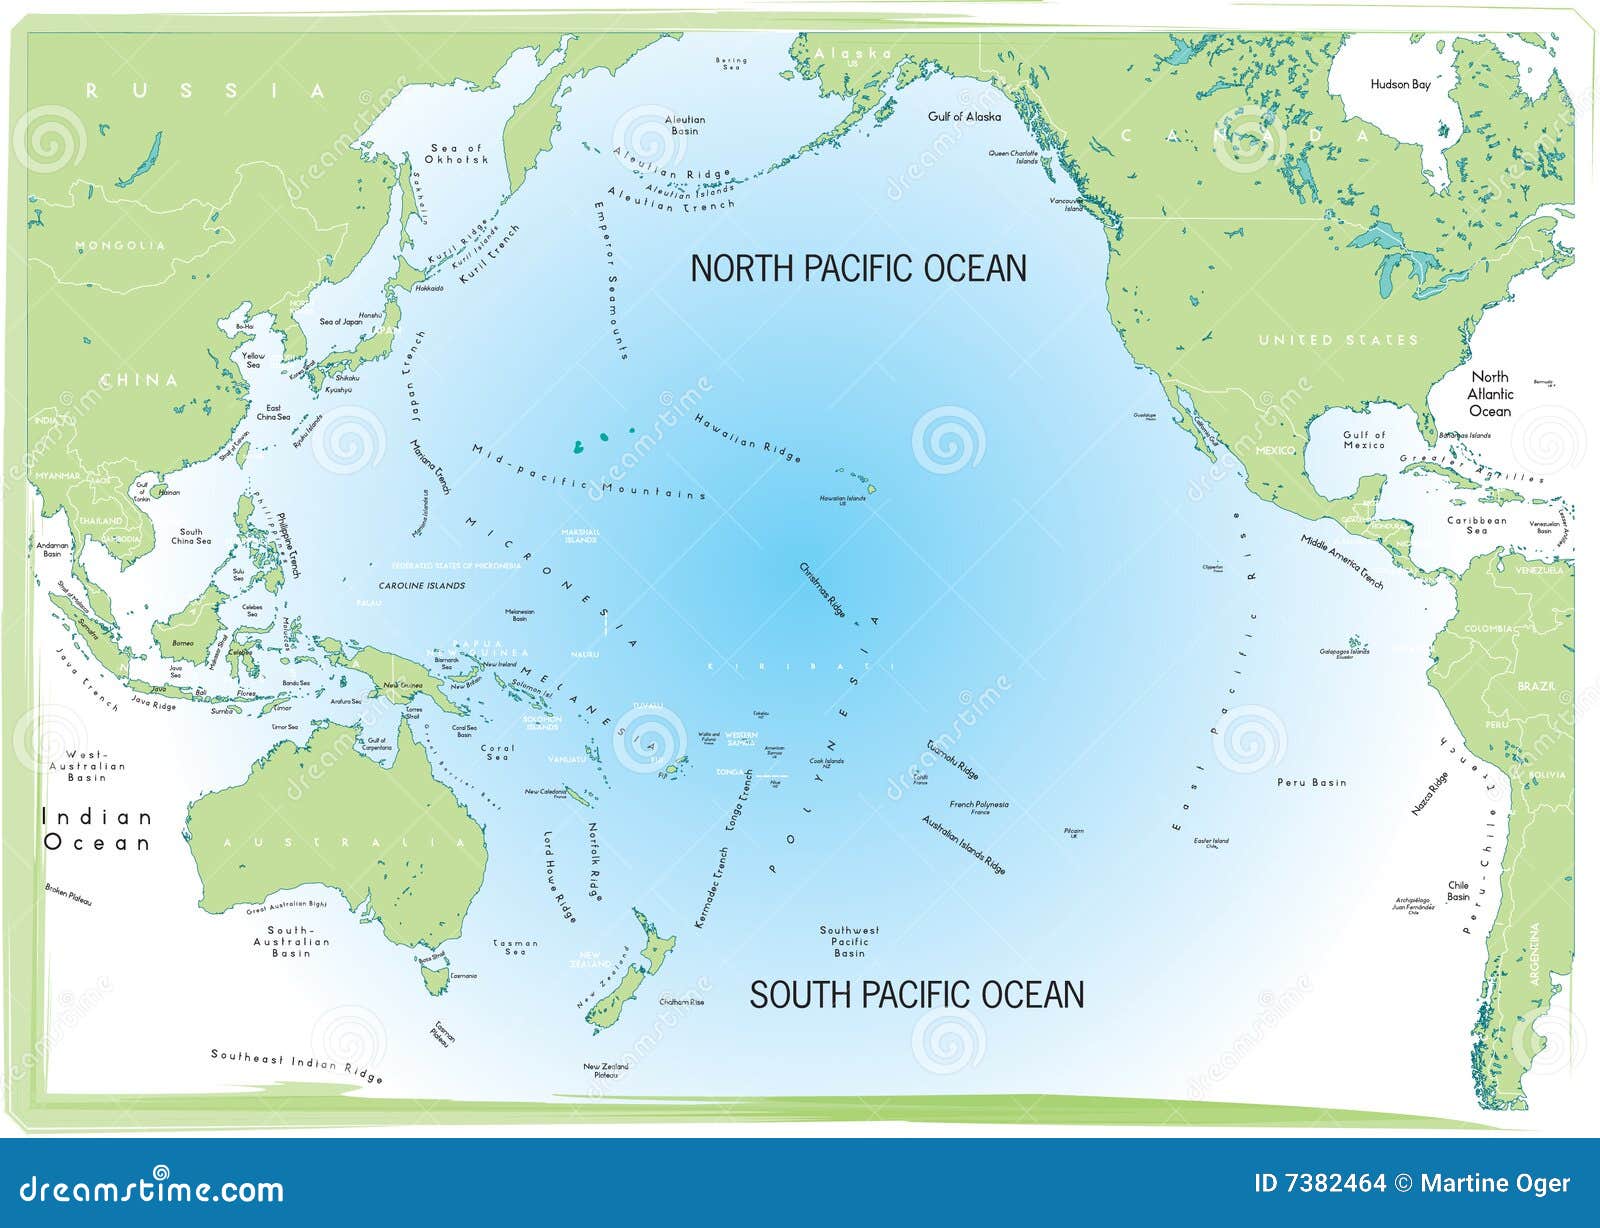 Группа островов в западной части тихого океана. Тихий океан на карте. Государства Тихого океана на карте. Pacific Ocean на карте. Острова Тихого океана на карте.